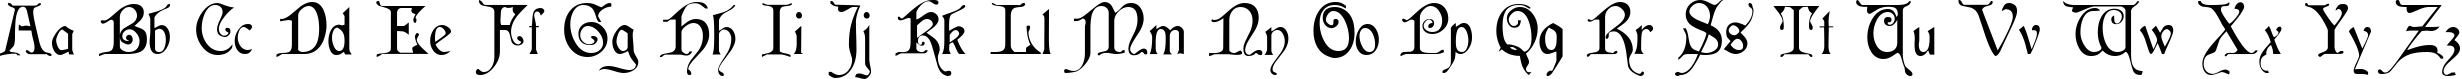 Пример написания английского алфавита шрифтом Cardinal Regular